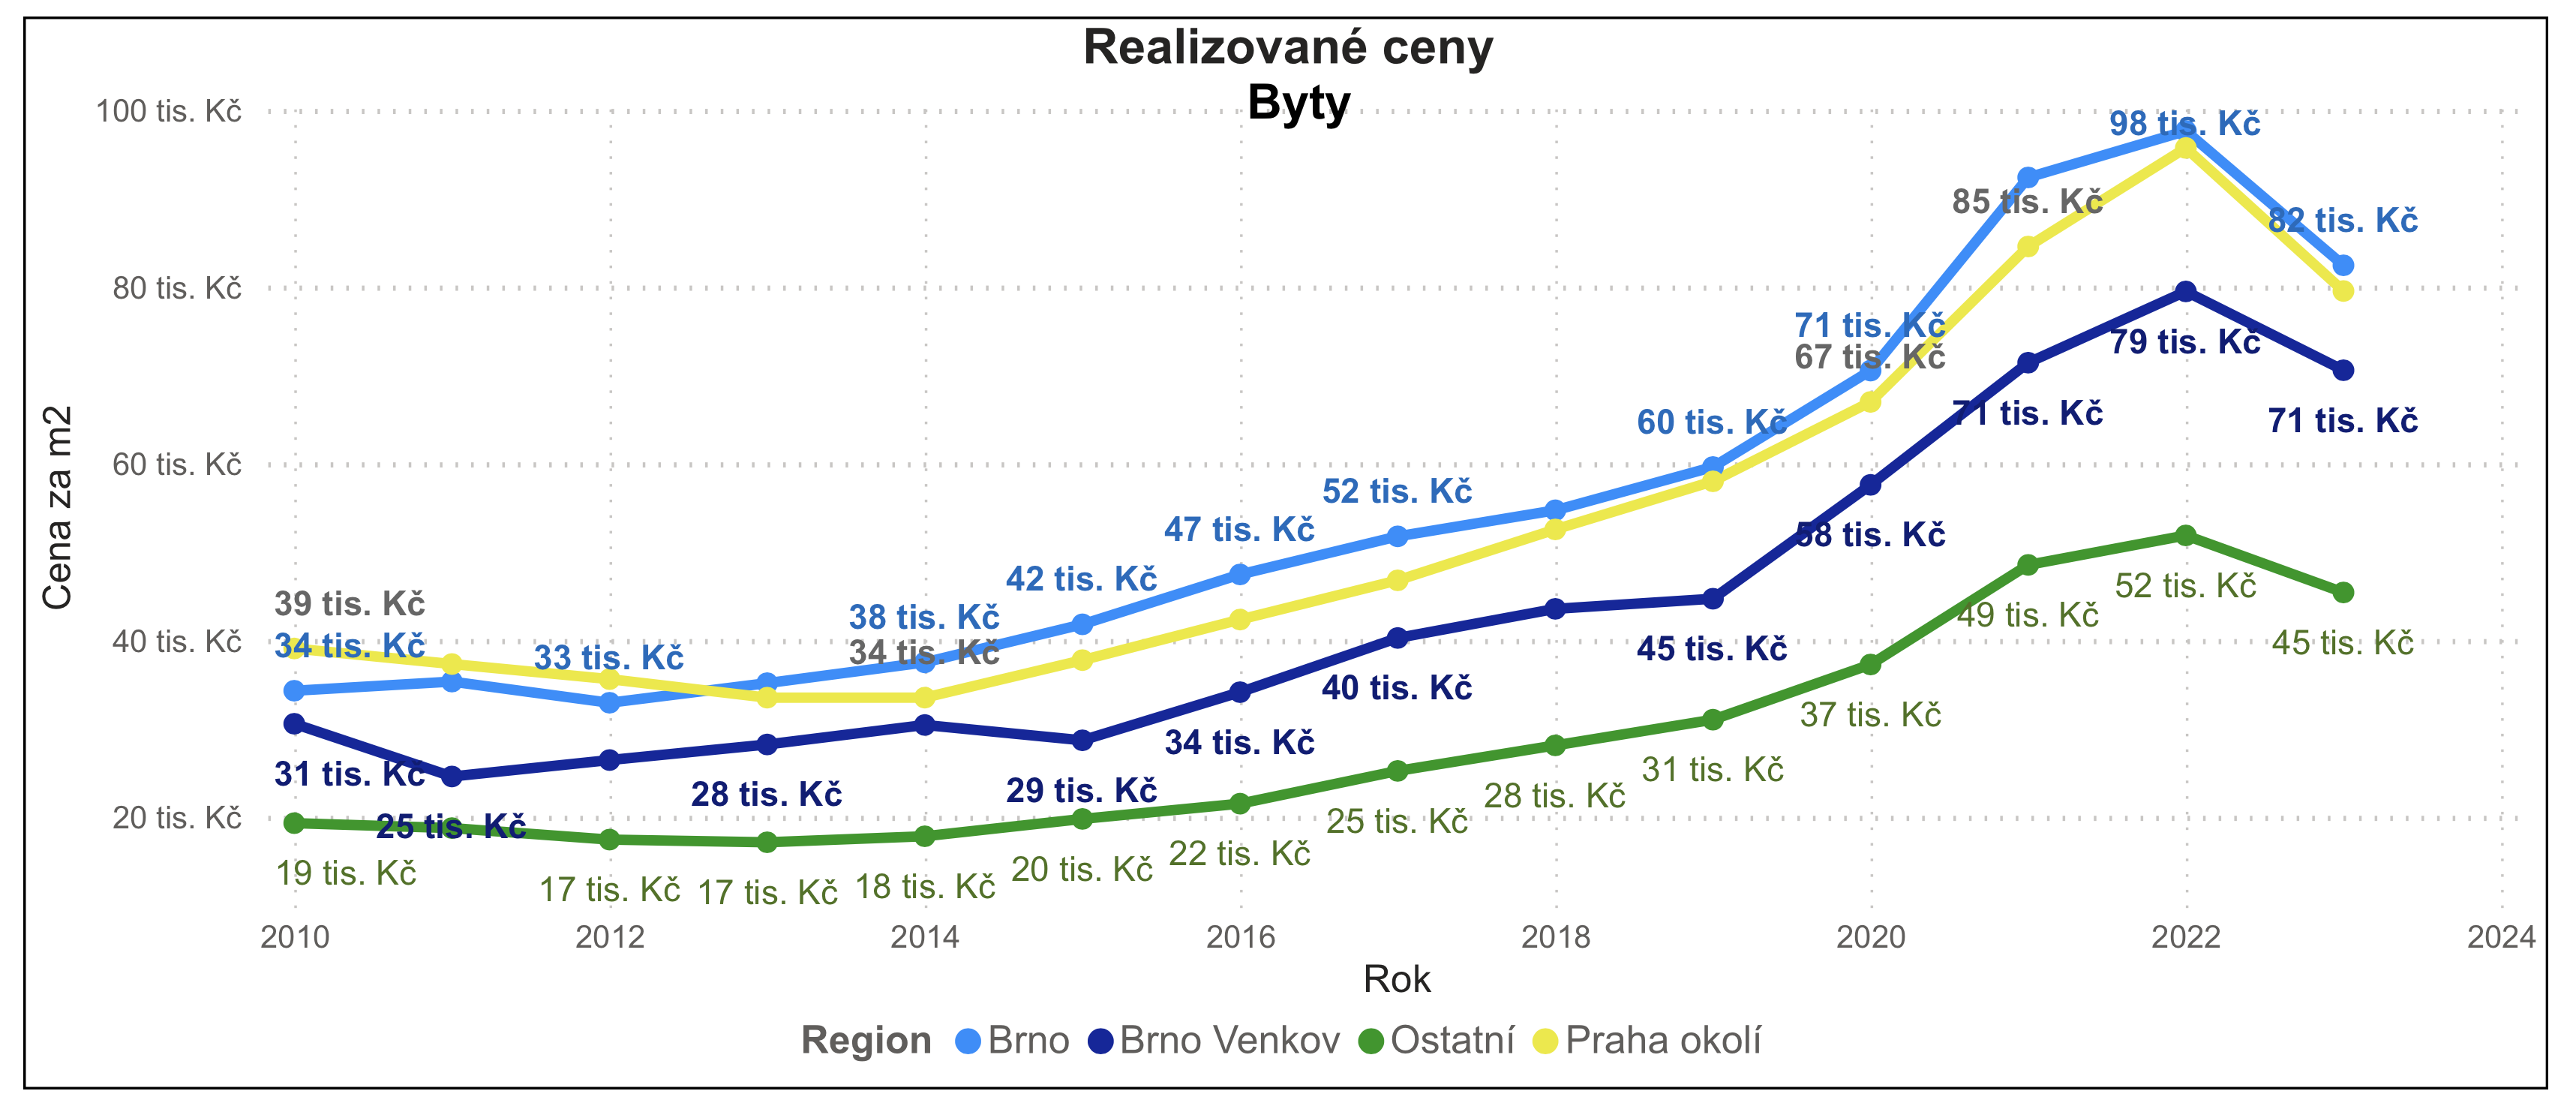 Realizované ceny bytů v Praze okoli 